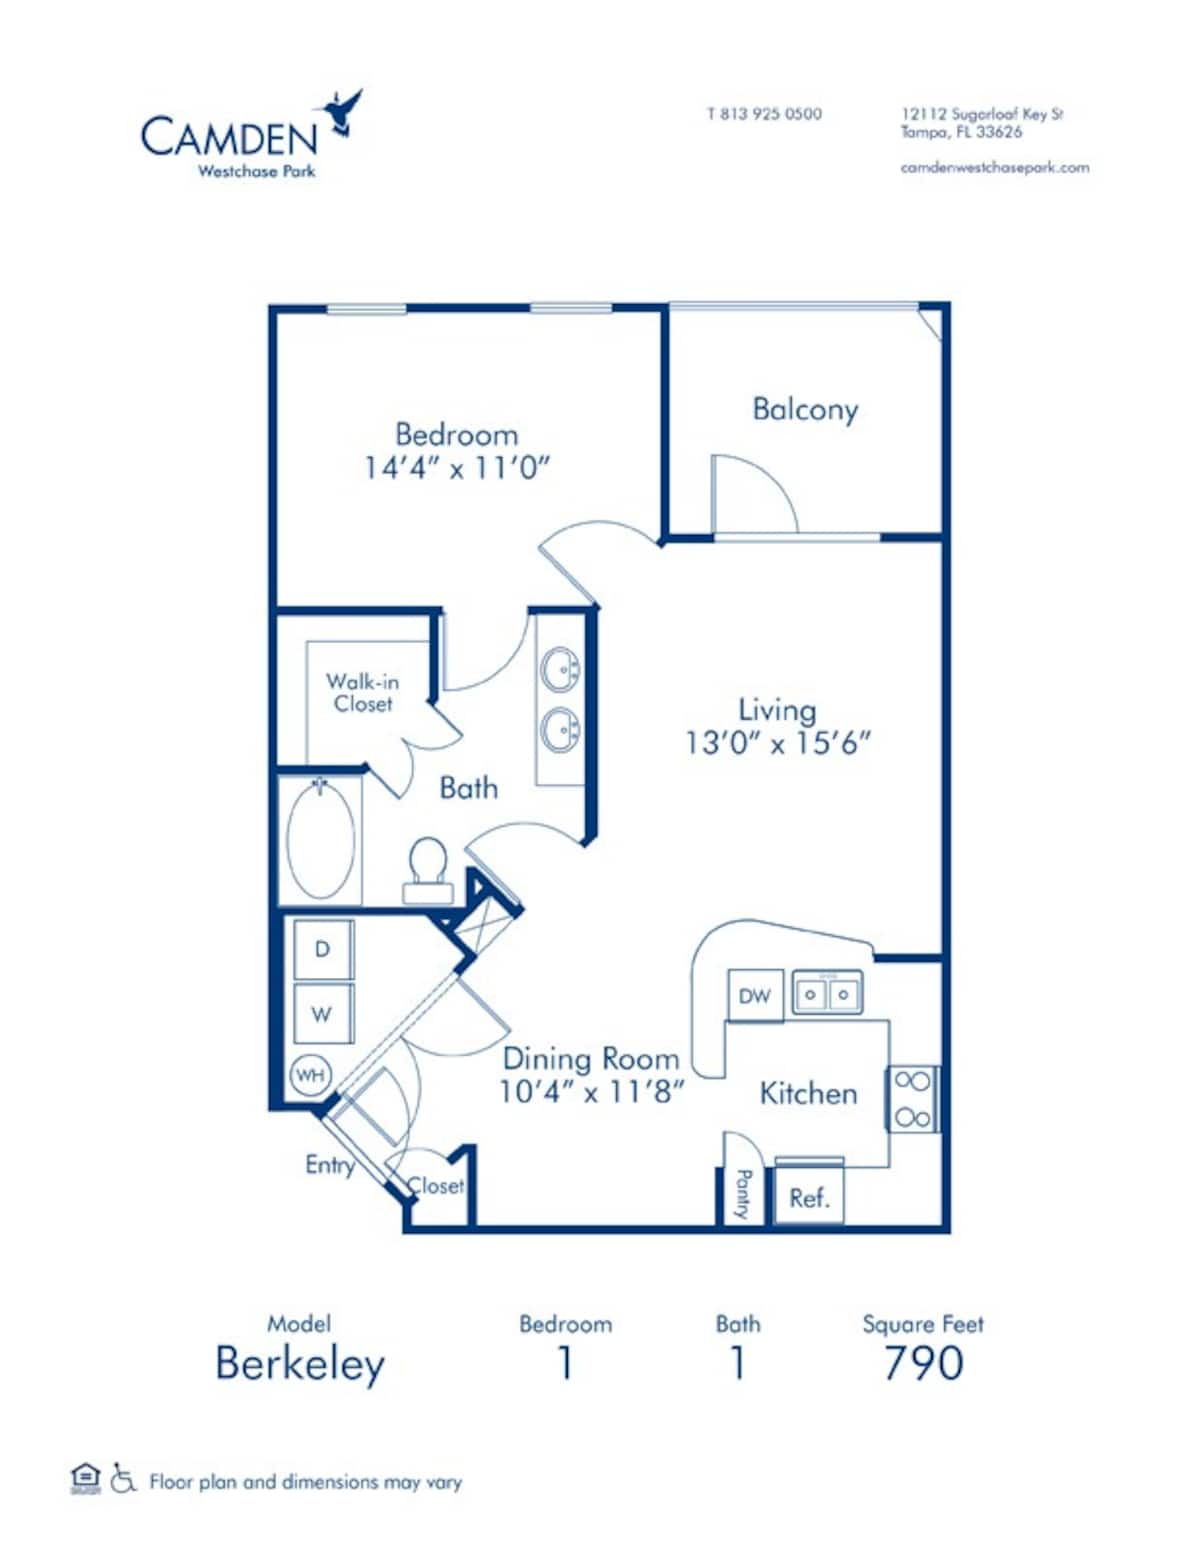 Floorplan diagram for Berkeley, showing 1 bedroom